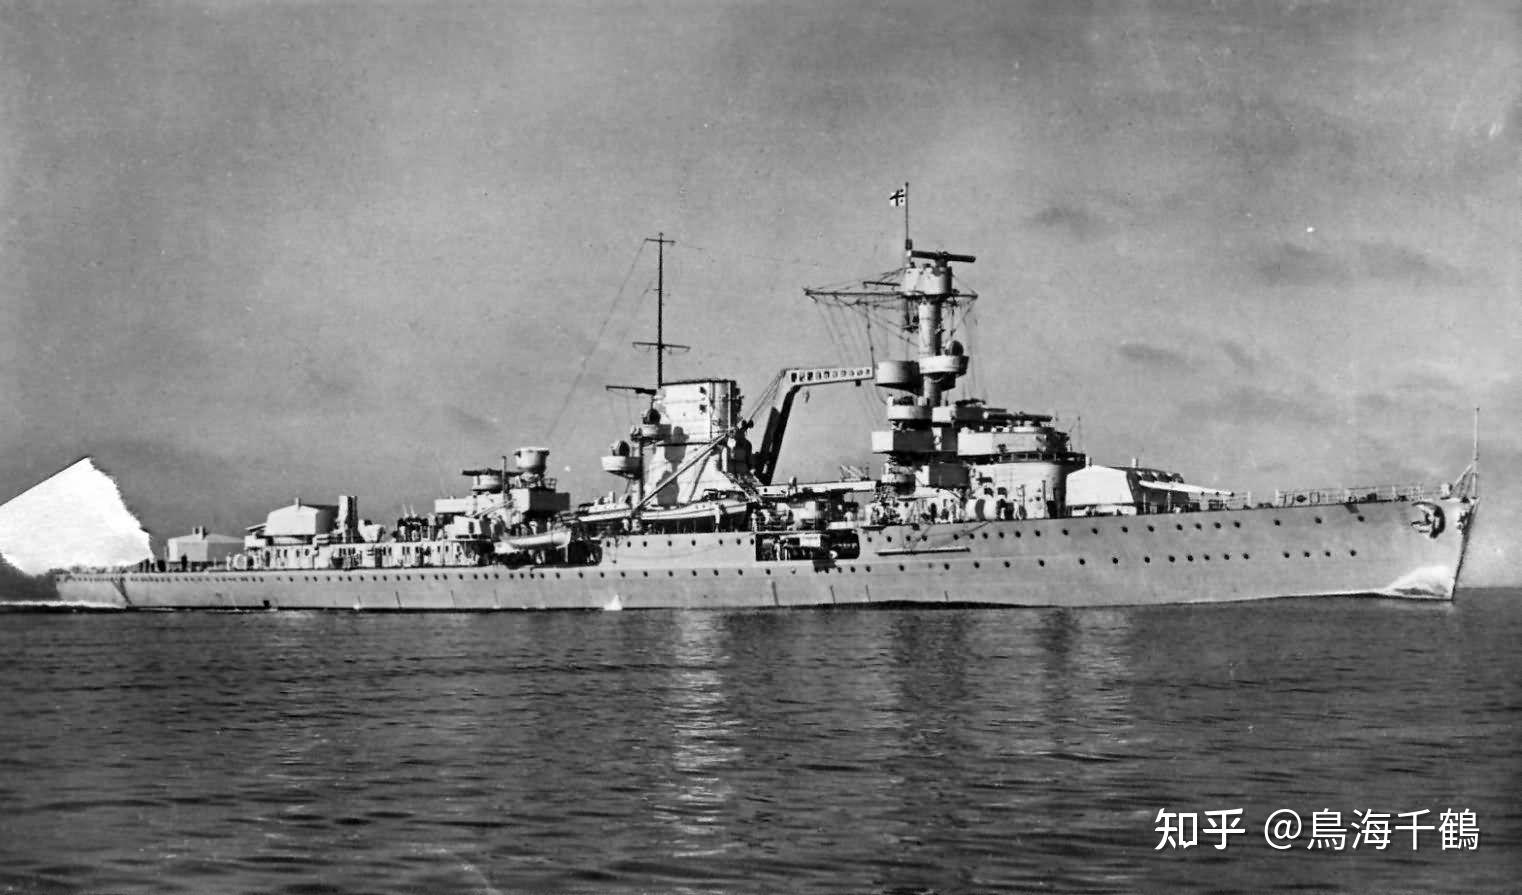 这就是魏玛德国的最后一艘巡洋舰—莱比锡号轻巡洋舰(leipzig)